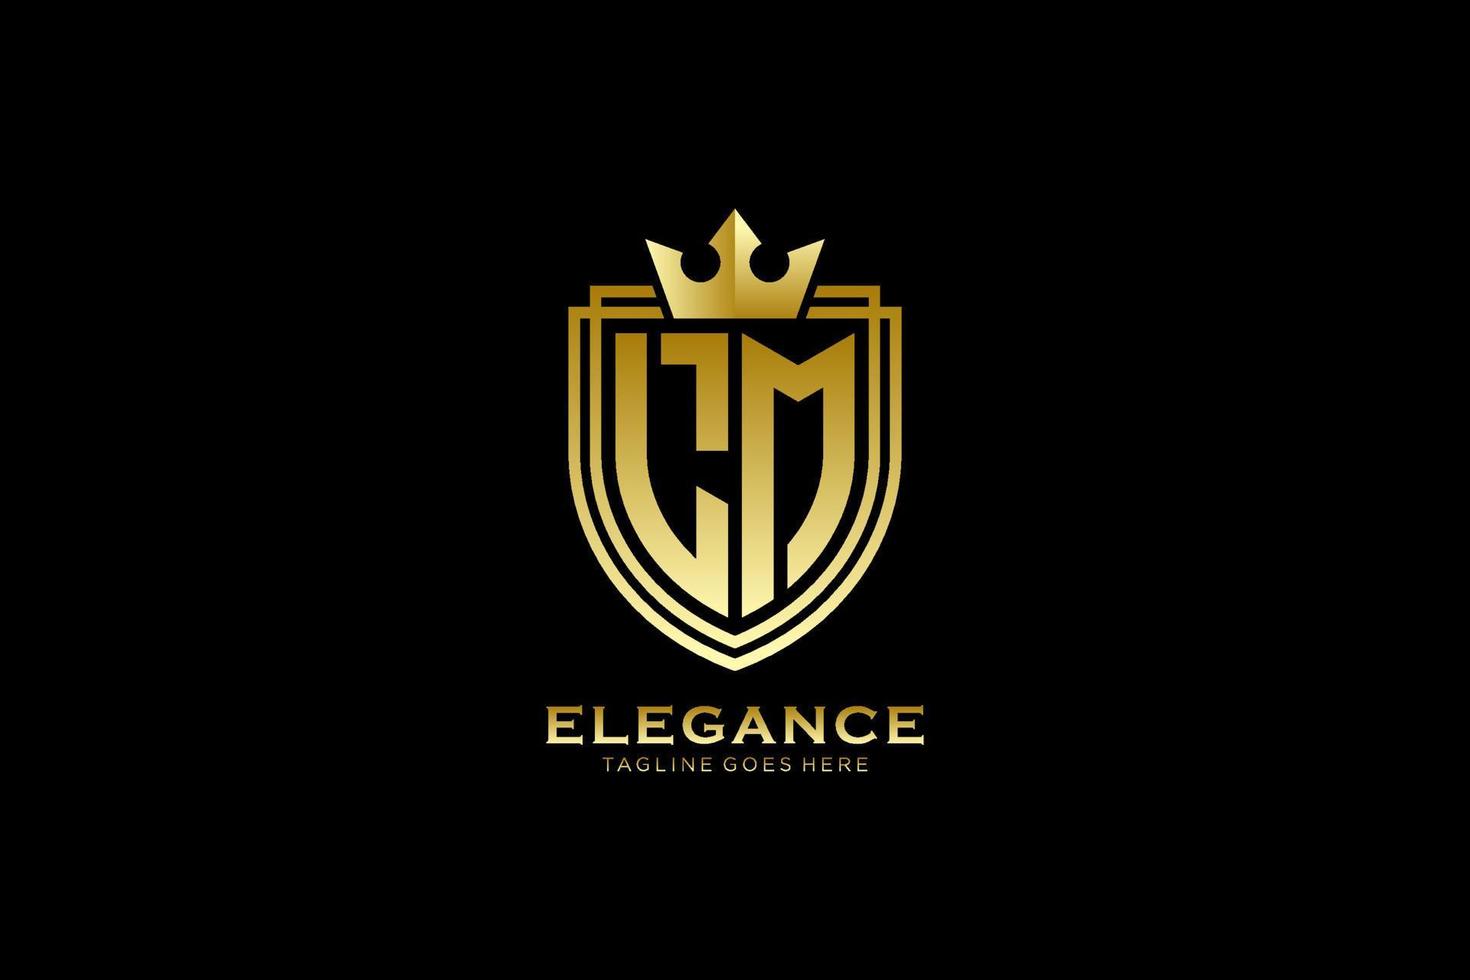 logo monogramme de luxe élégant initial lm ou modèle de badge avec volutes et couronne royale - parfait pour les projets de marque de luxe vecteur